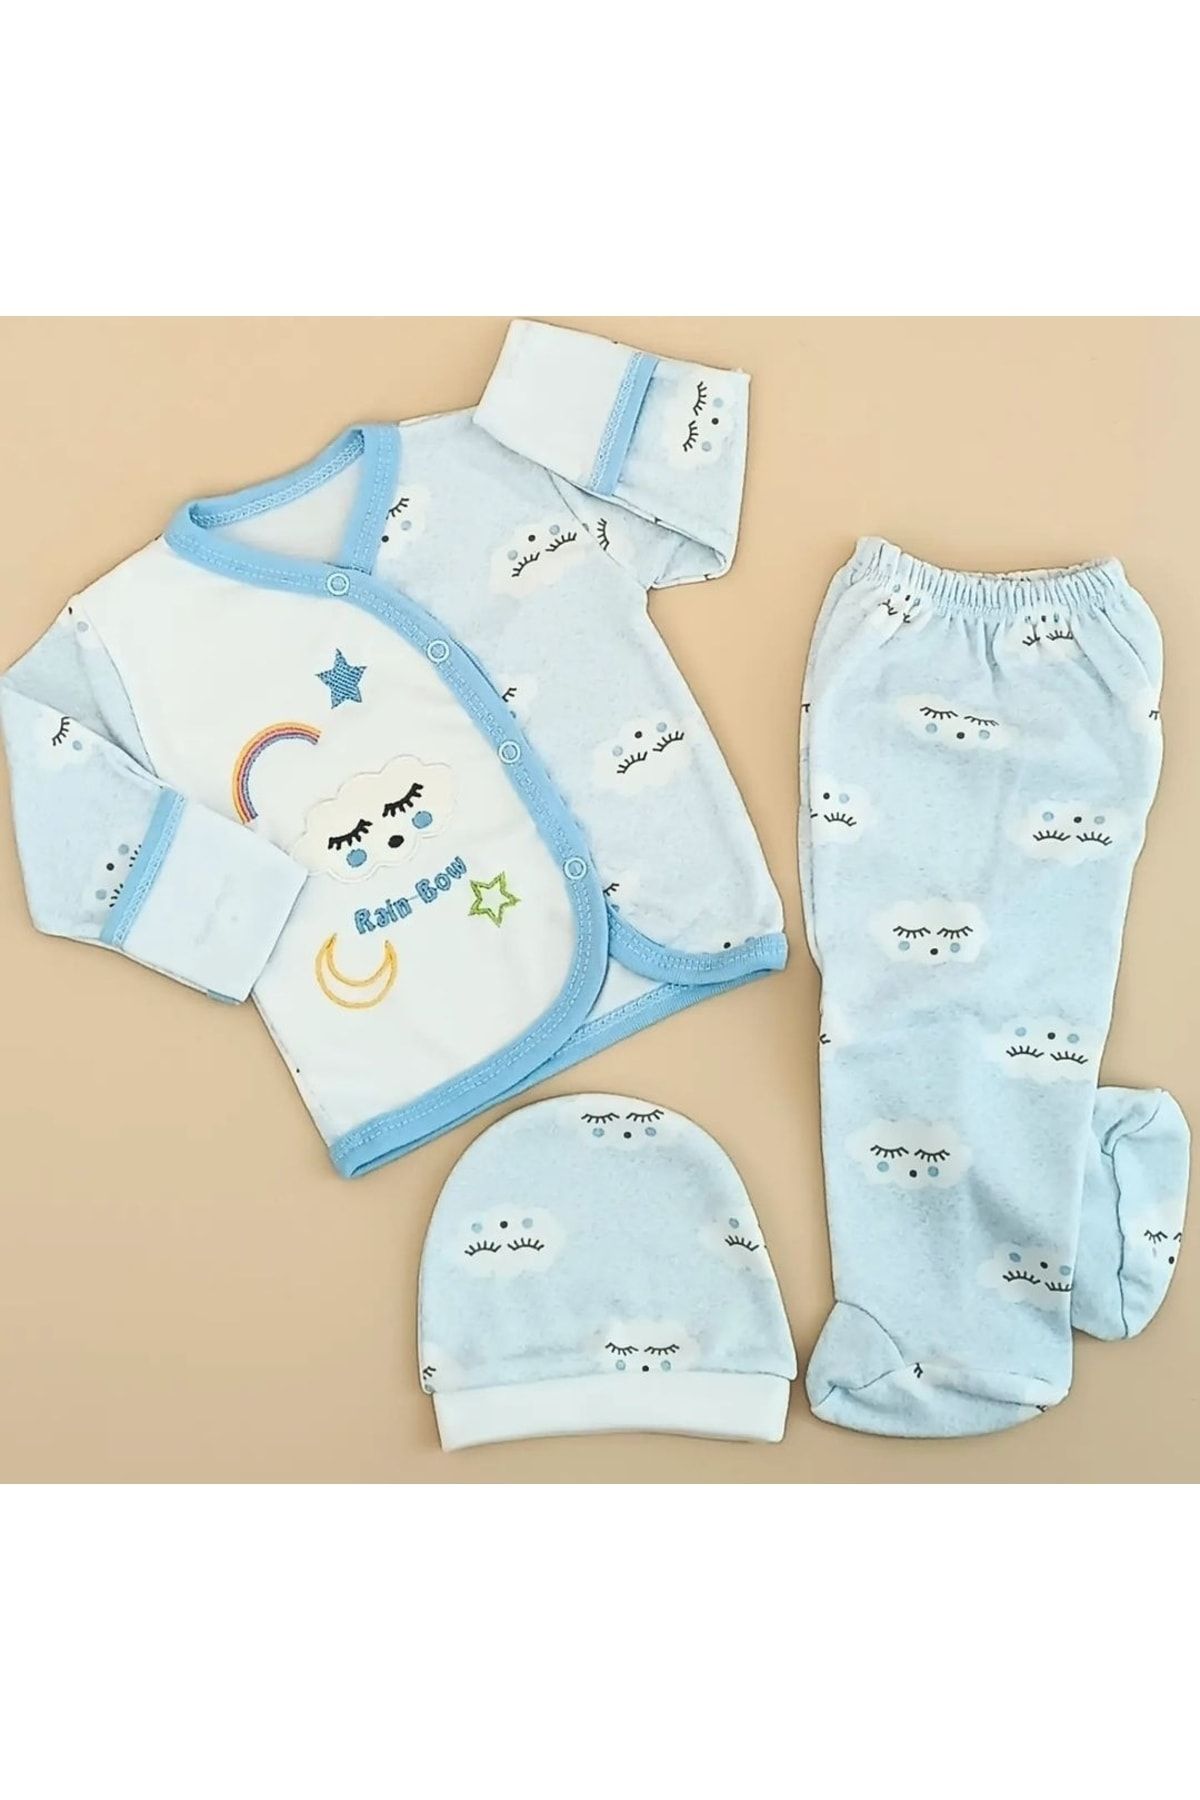 HİD MARKET 0-3 Ay Bebek Hastane Çıkışları, Bebek Kıyafetleri, Bebek Zıbın Setleri